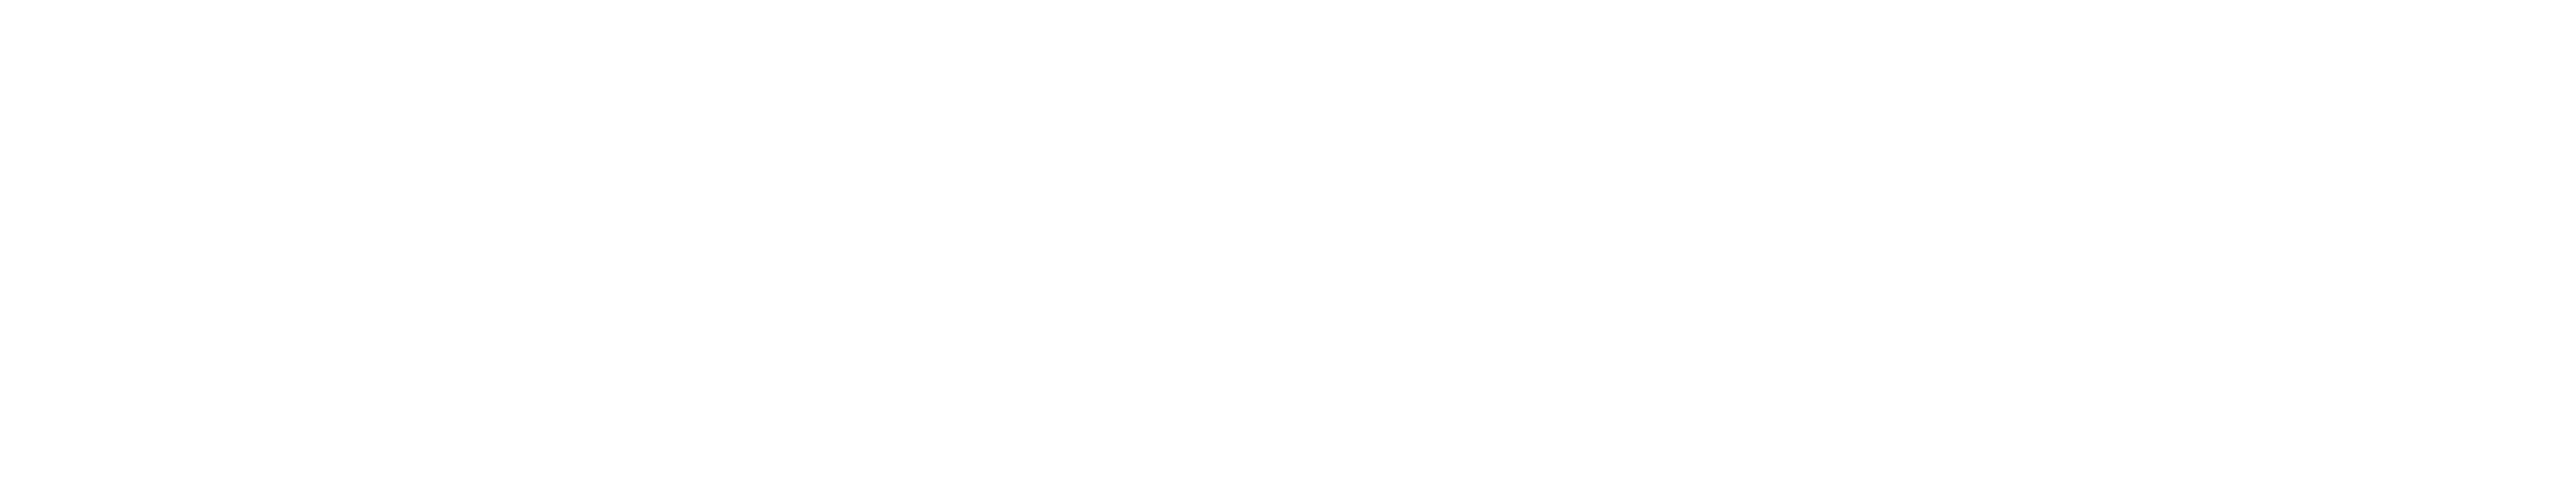 White SJSU logo